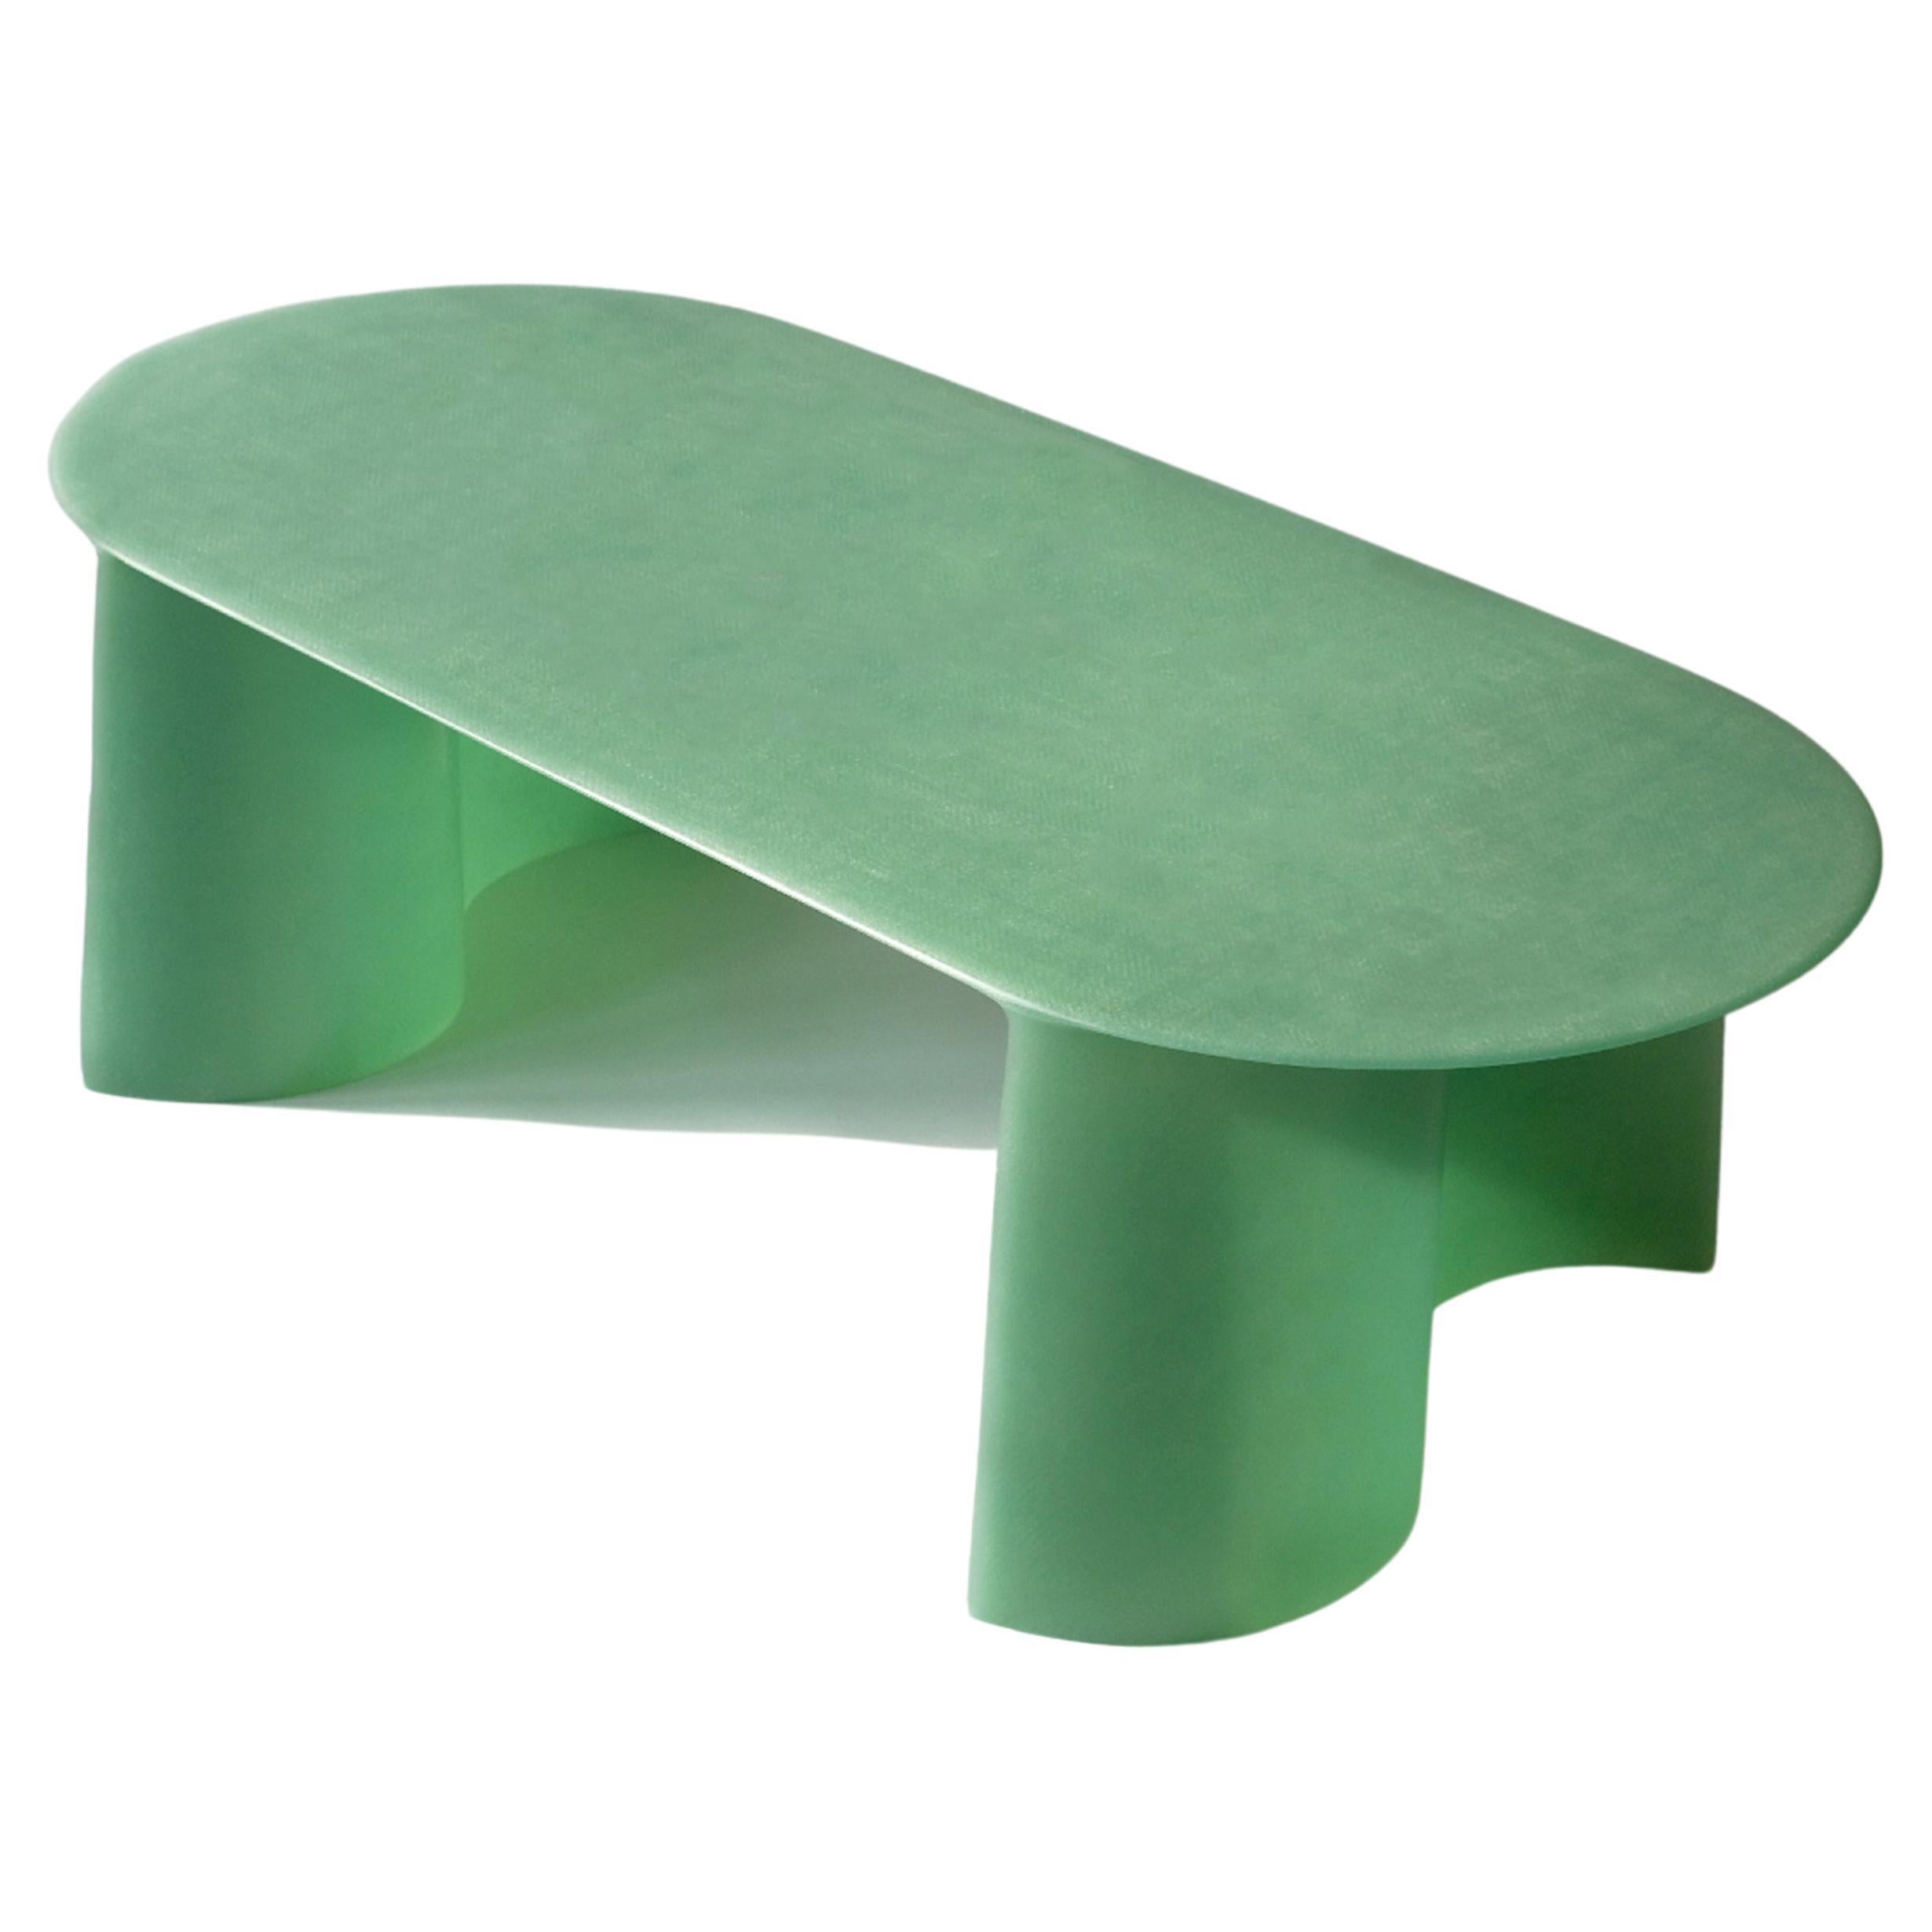 Petite table basse contemporaine en fibre de verre verte, Nouvelle vague, par Lukas Cober